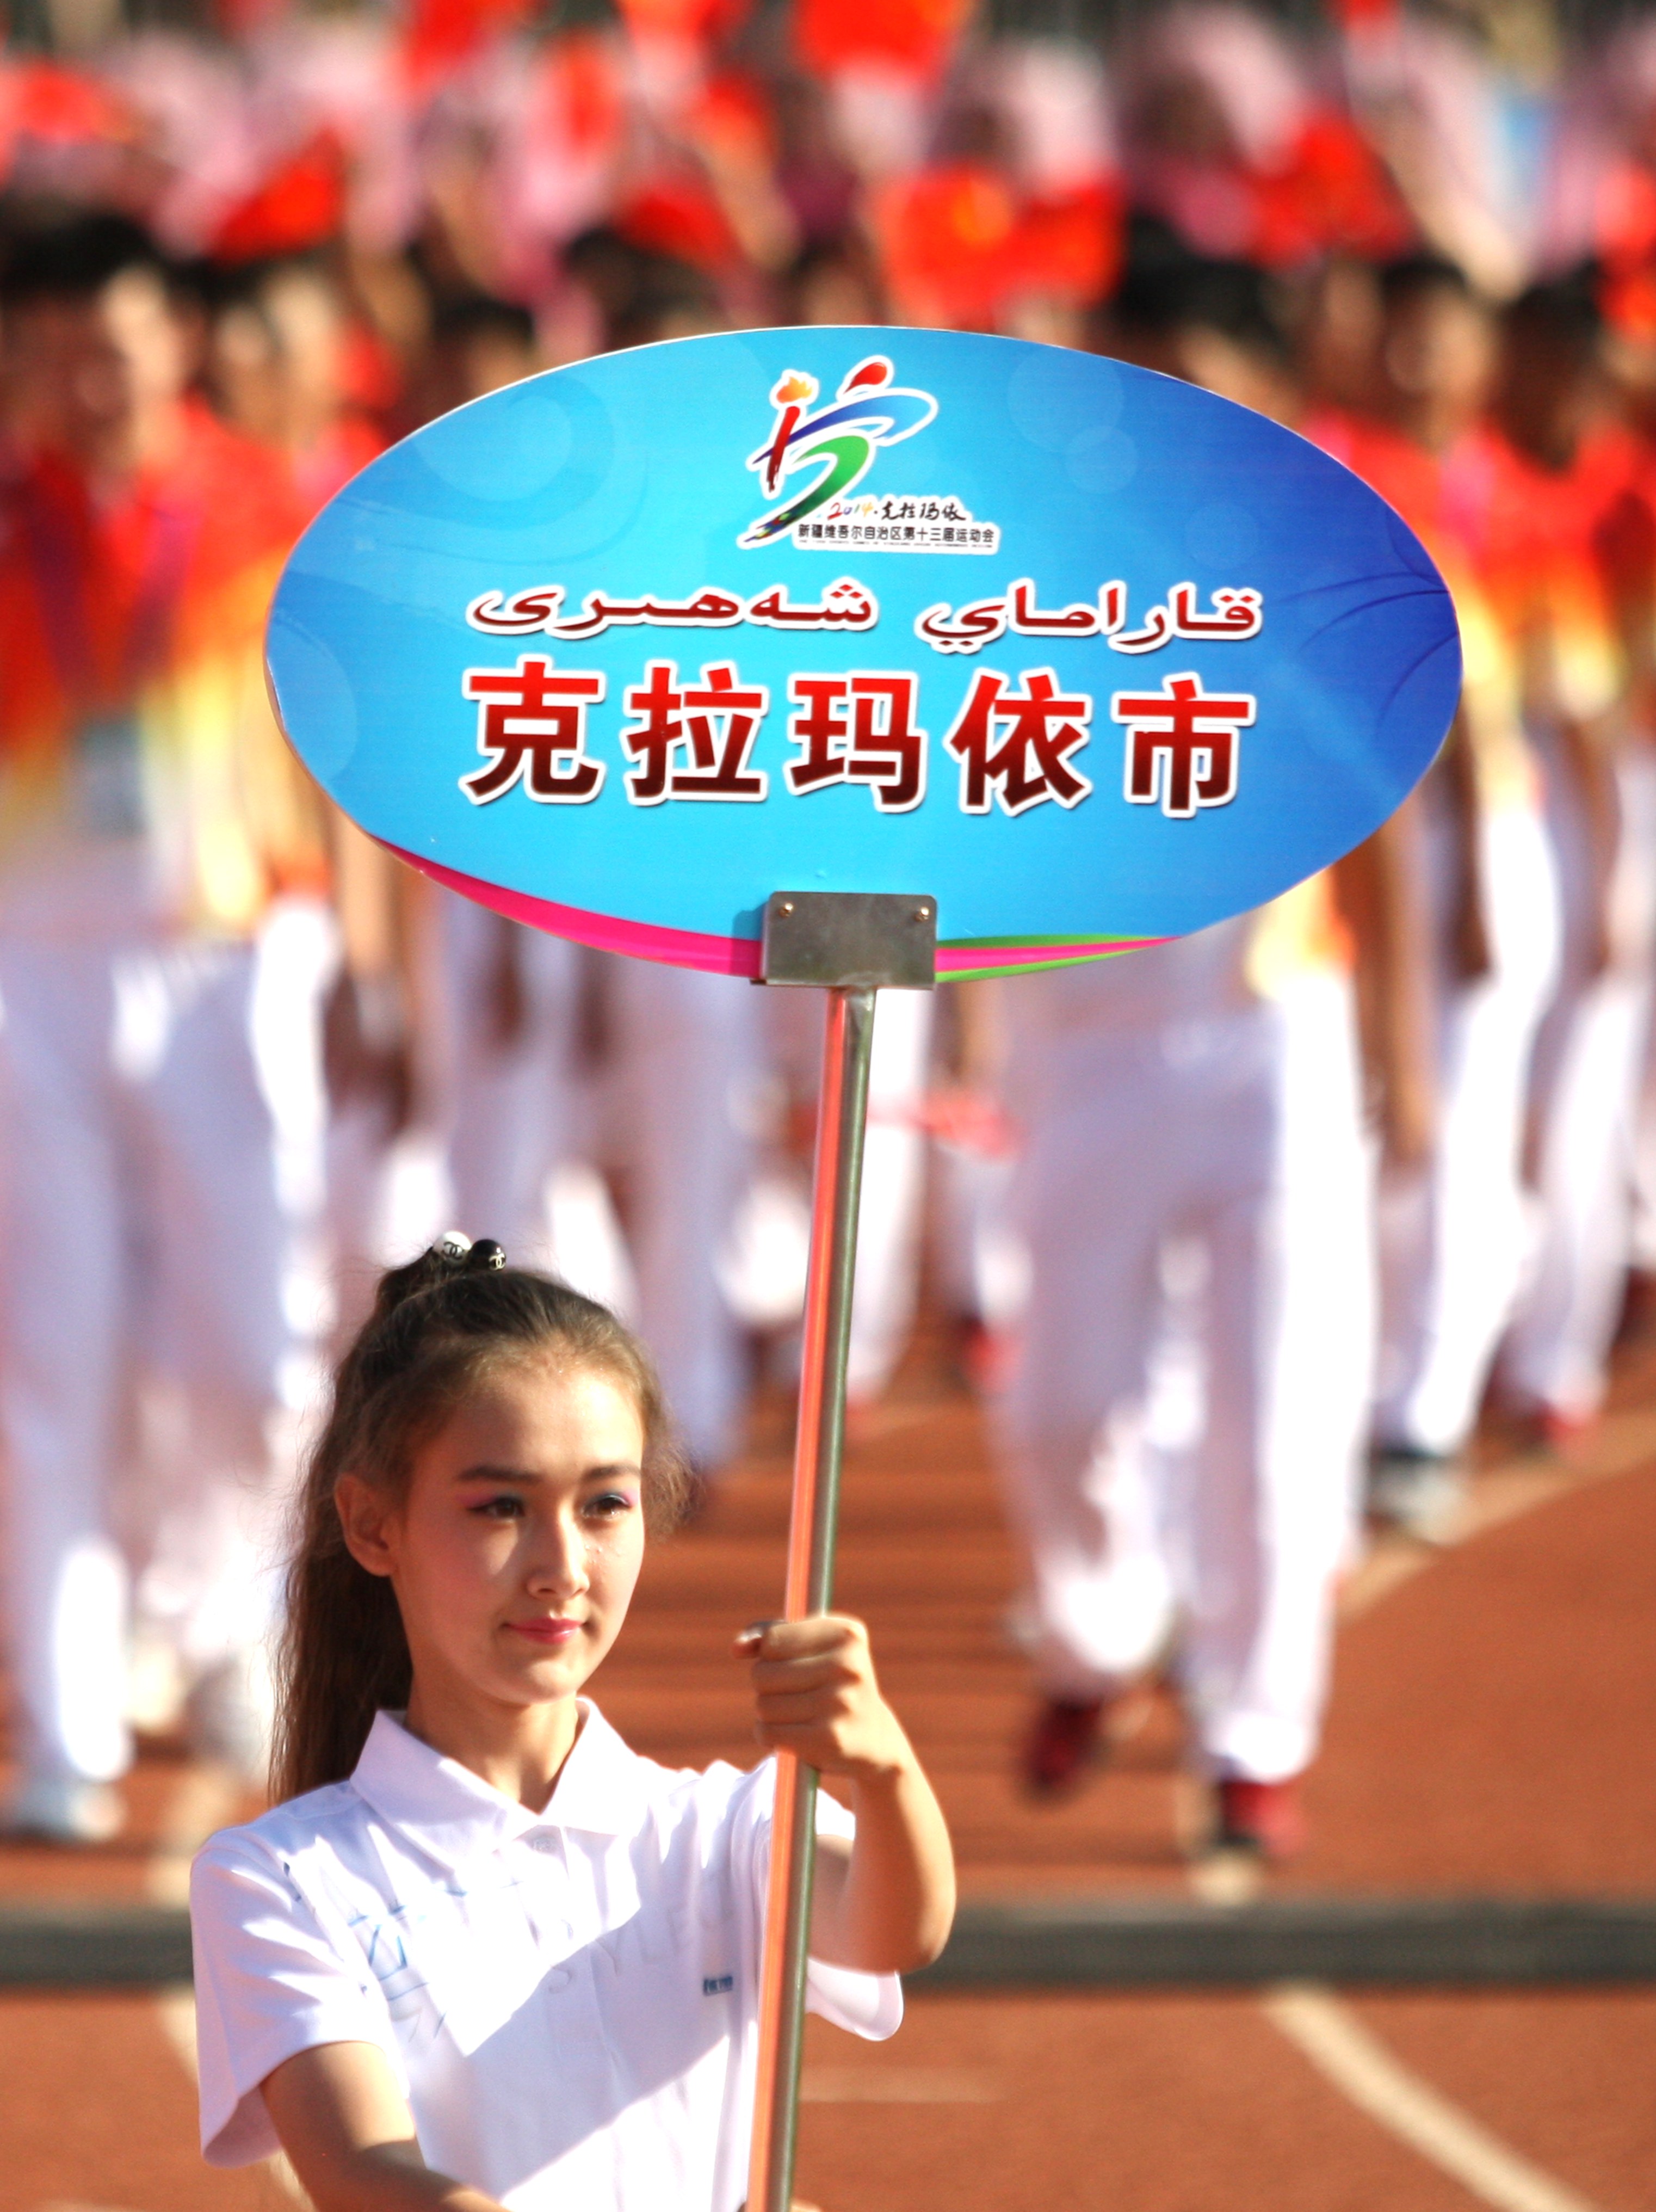 新疆自治区第十三届运动会开幕